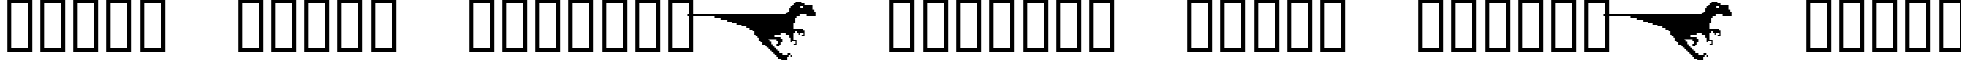 Пример написания шрифтом DinosoType текста на белорусском